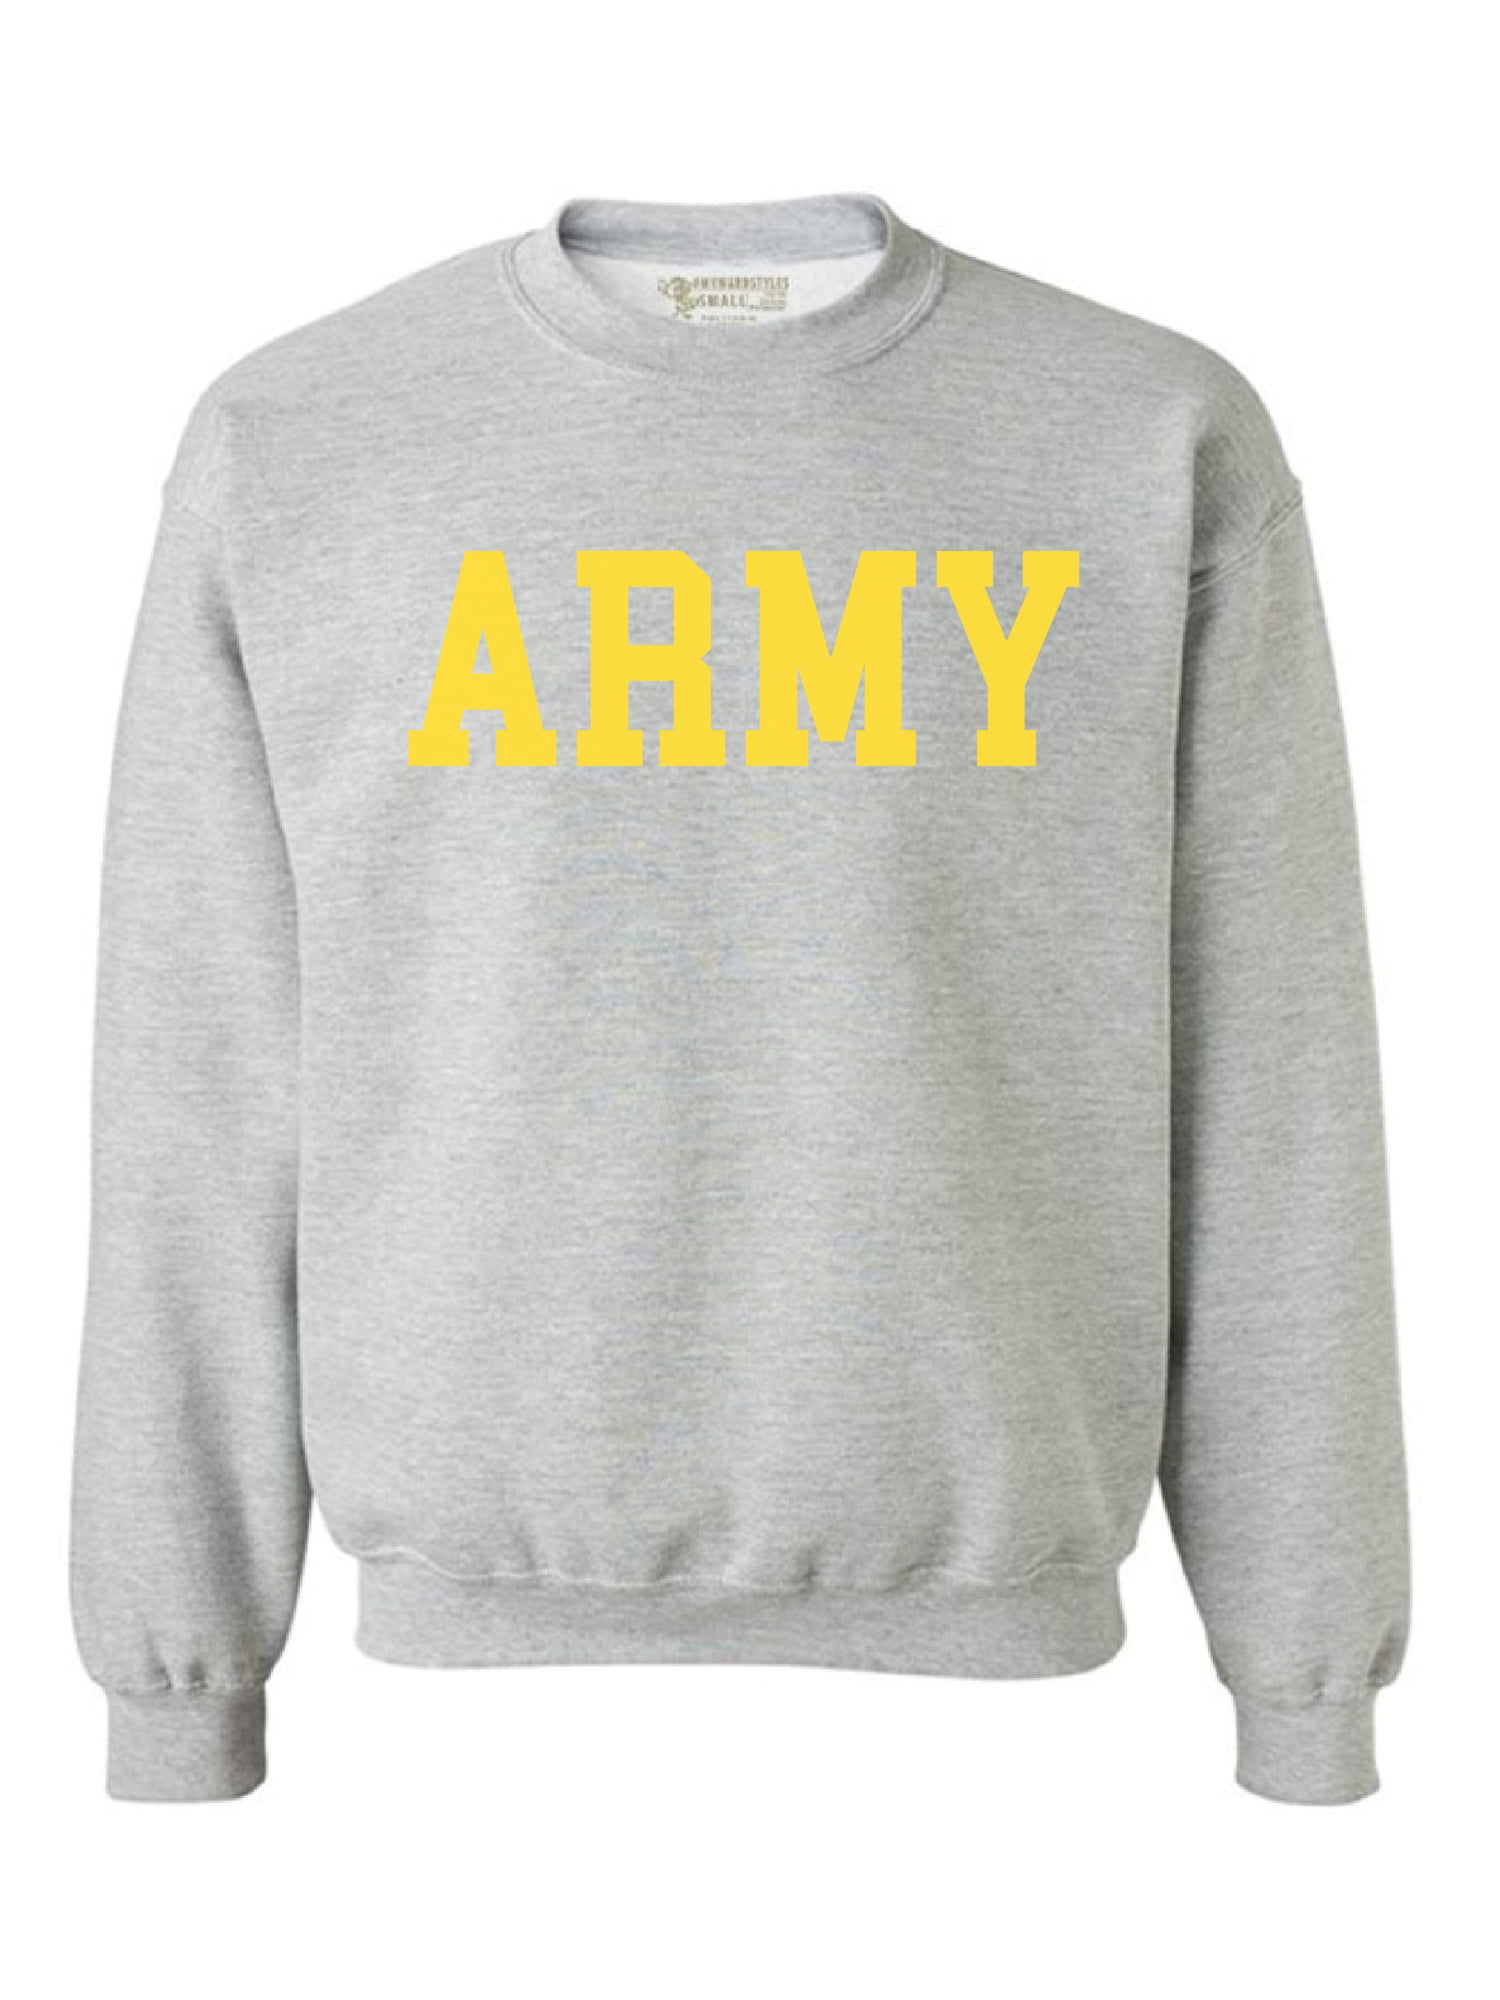 Army Wife Army Girlfriend Army Fiance Army Wife Sweater Crew-neck Sweatshirt unisex Super Soft Sweater Personalized Crew-neck sweatshirt